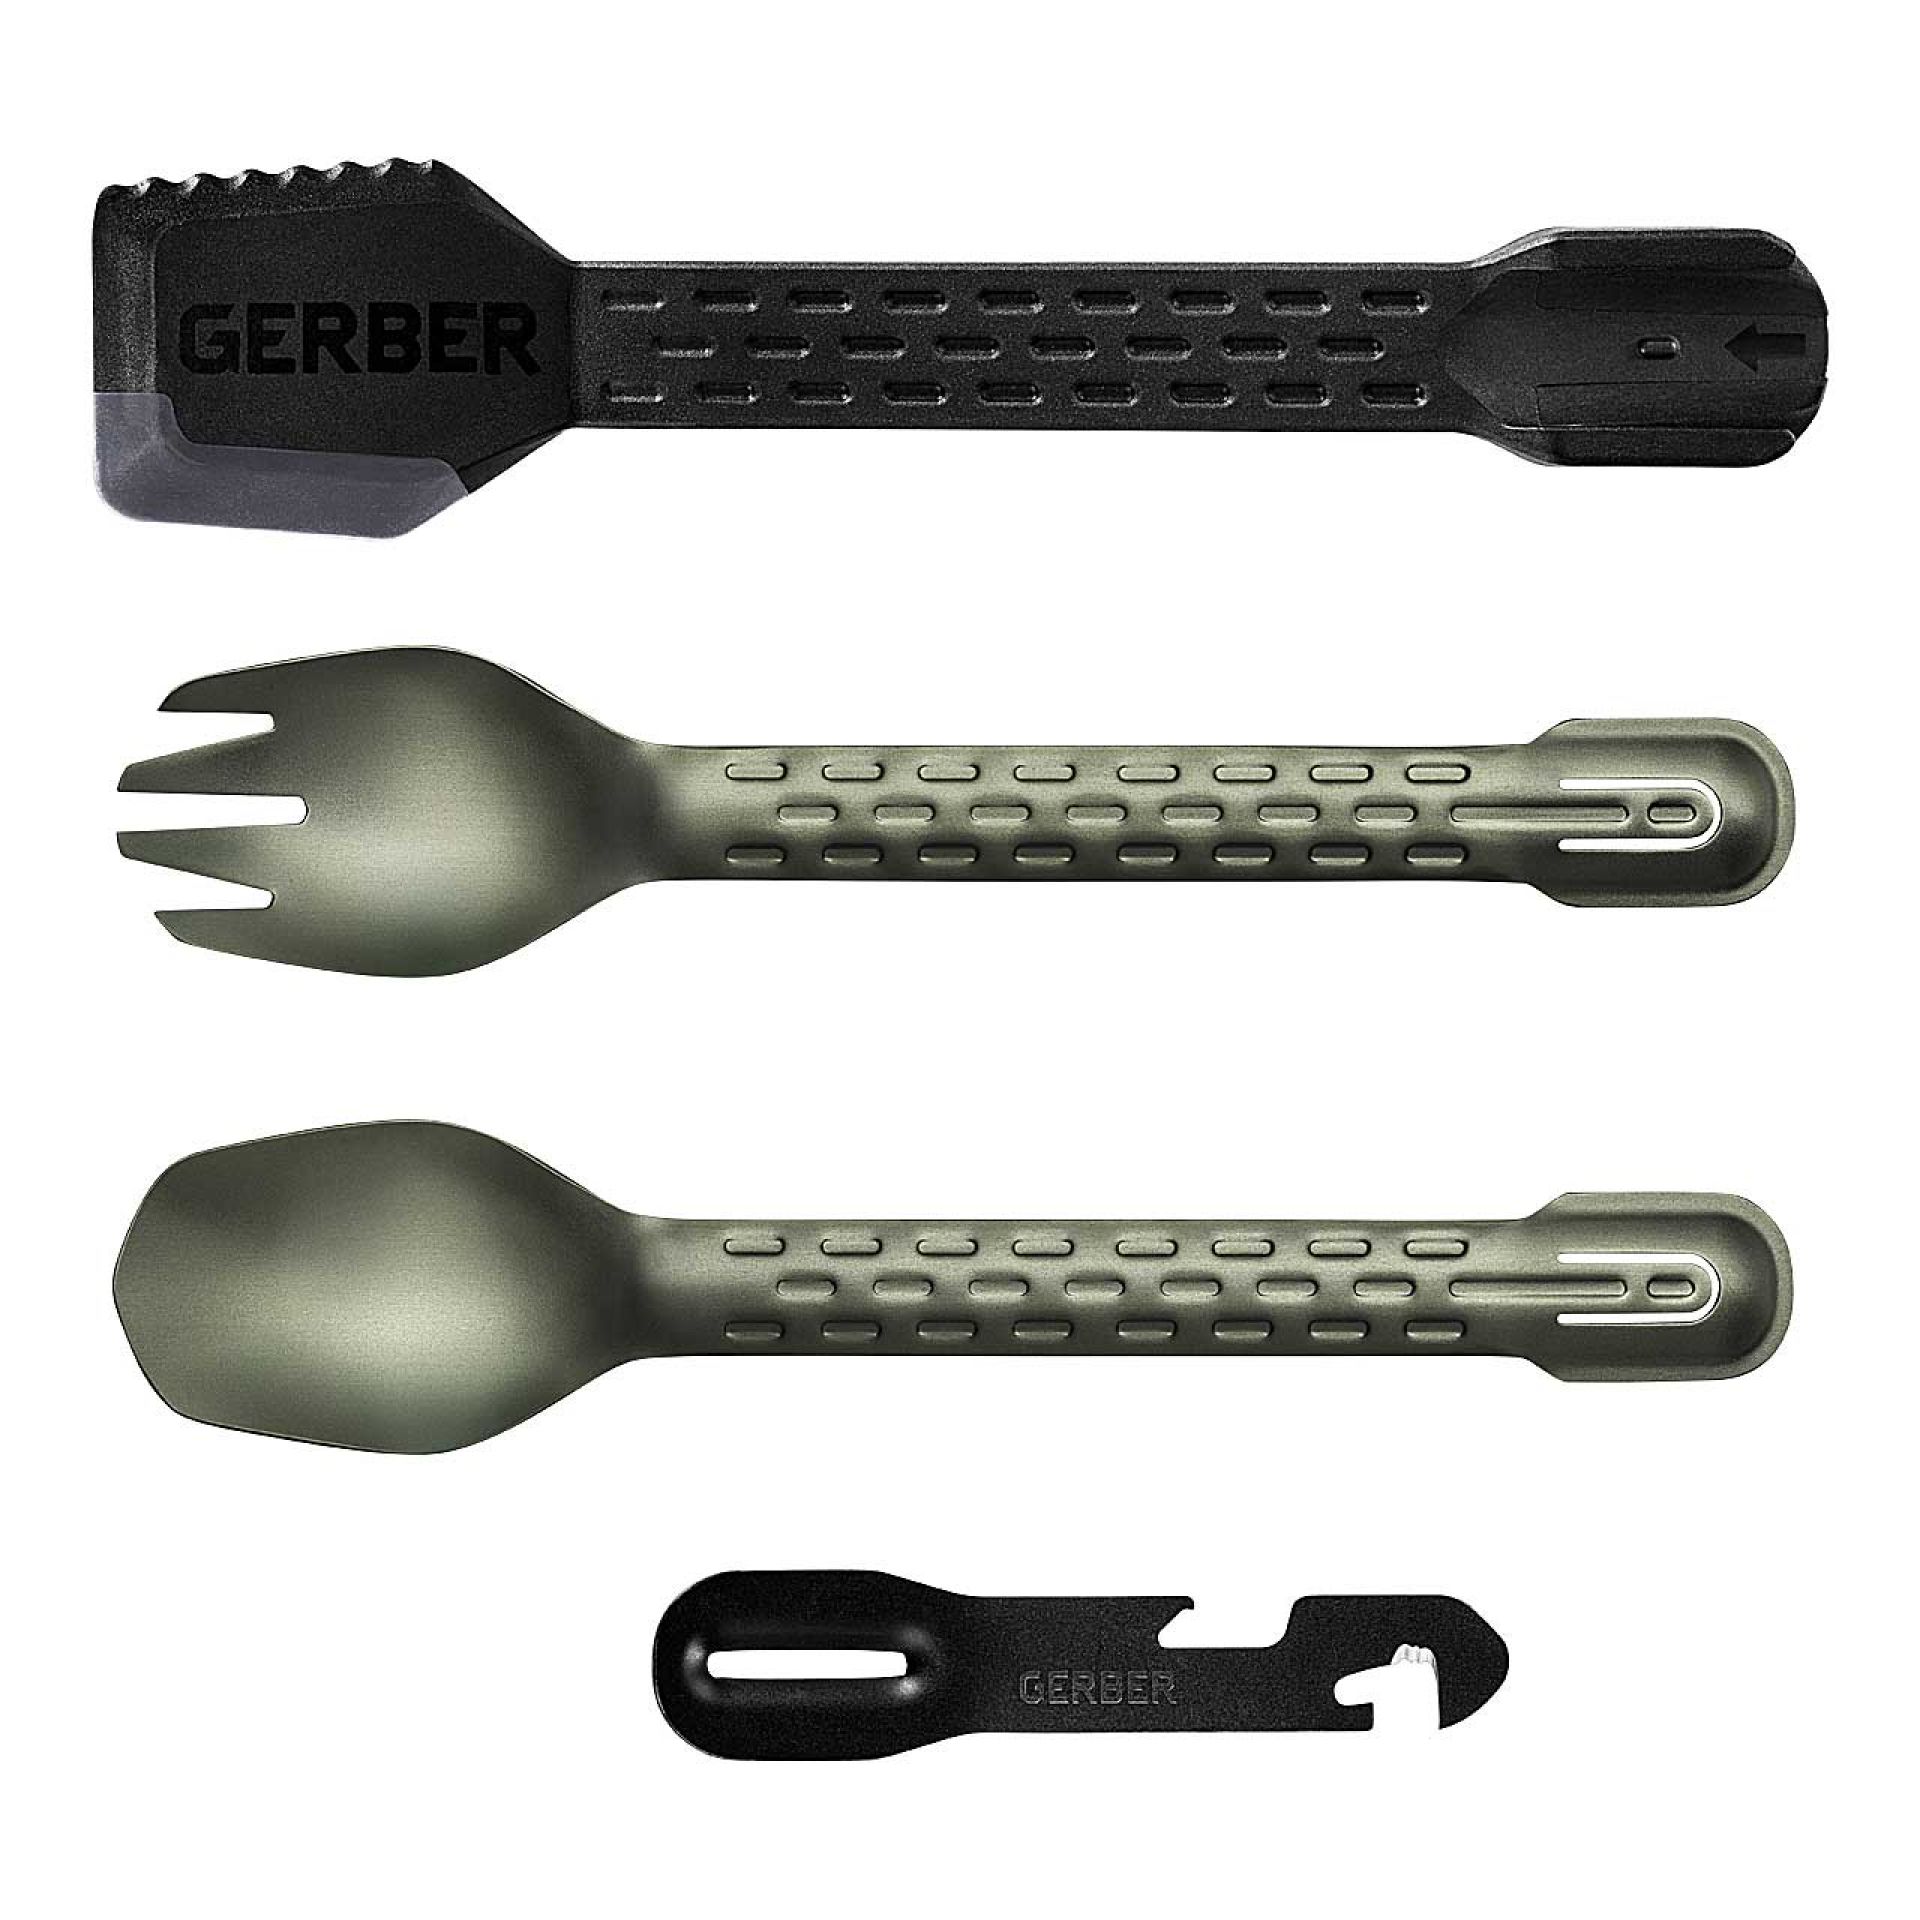 Gerber Outdoor Küchenwerkzeug COMPLEAT FSG, Löffel, Gabel, Schaber, Aluminium/Kunststoff, Edelstahl